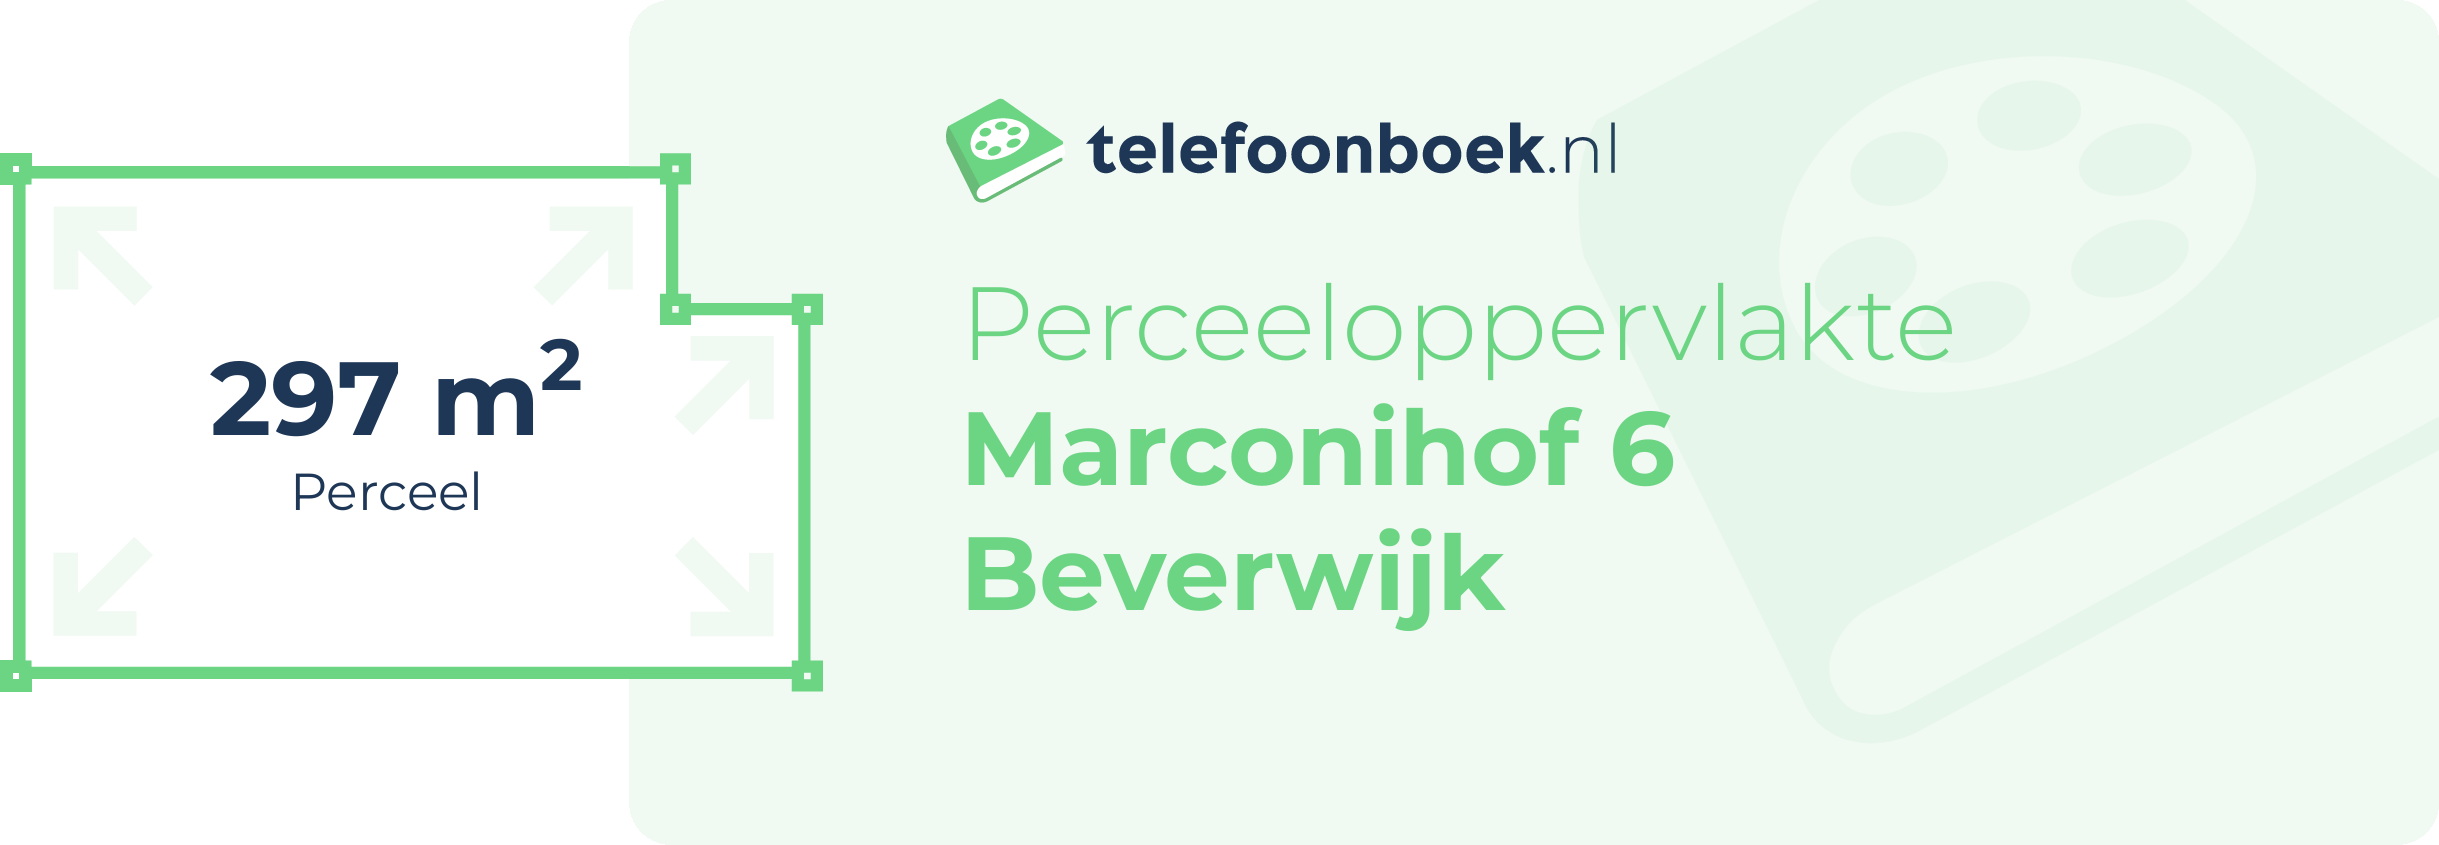 Perceeloppervlakte Marconihof 6 Beverwijk